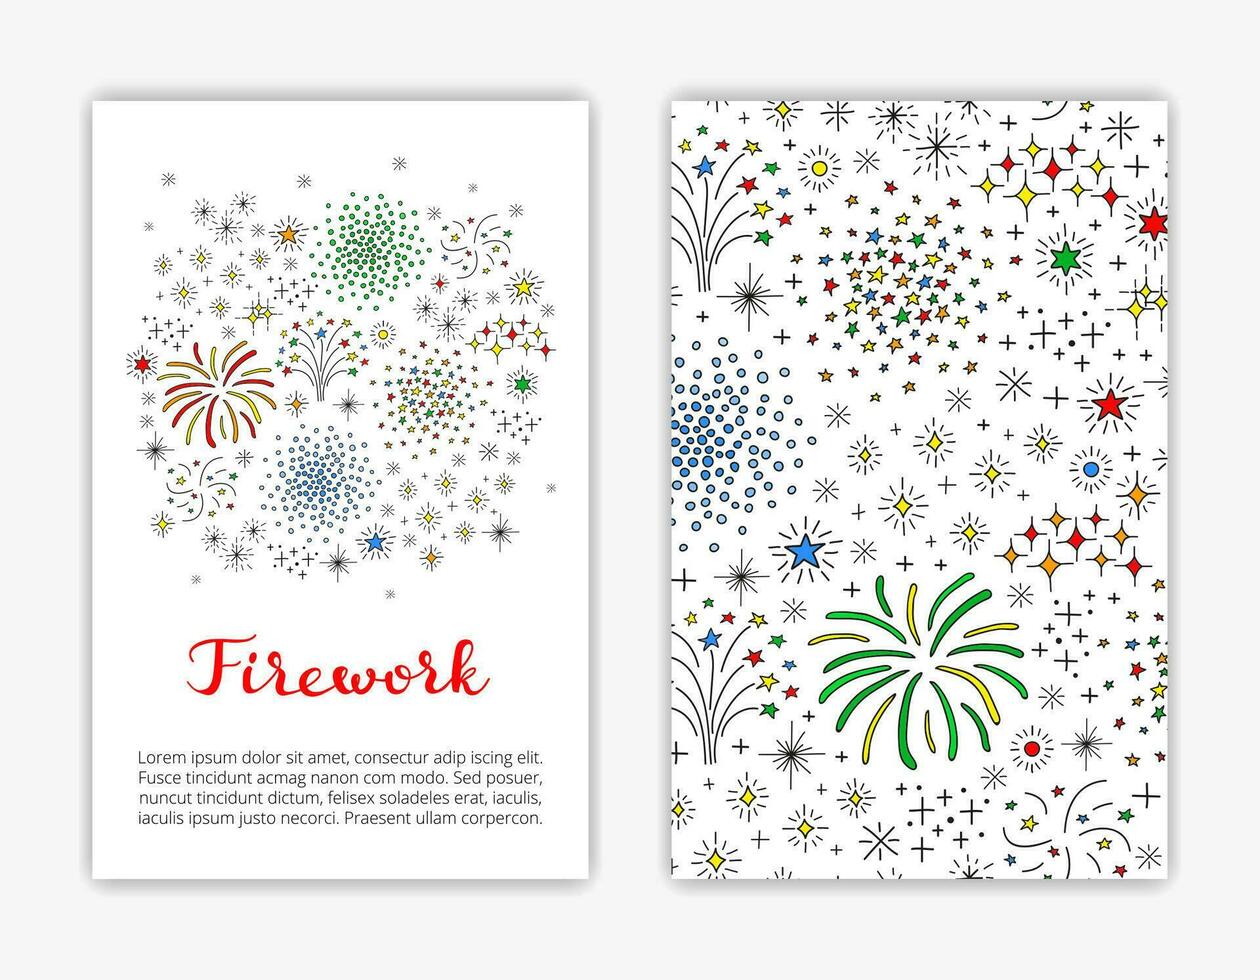 cartão modelos com rabisco composição do fogos de artifício. vetor